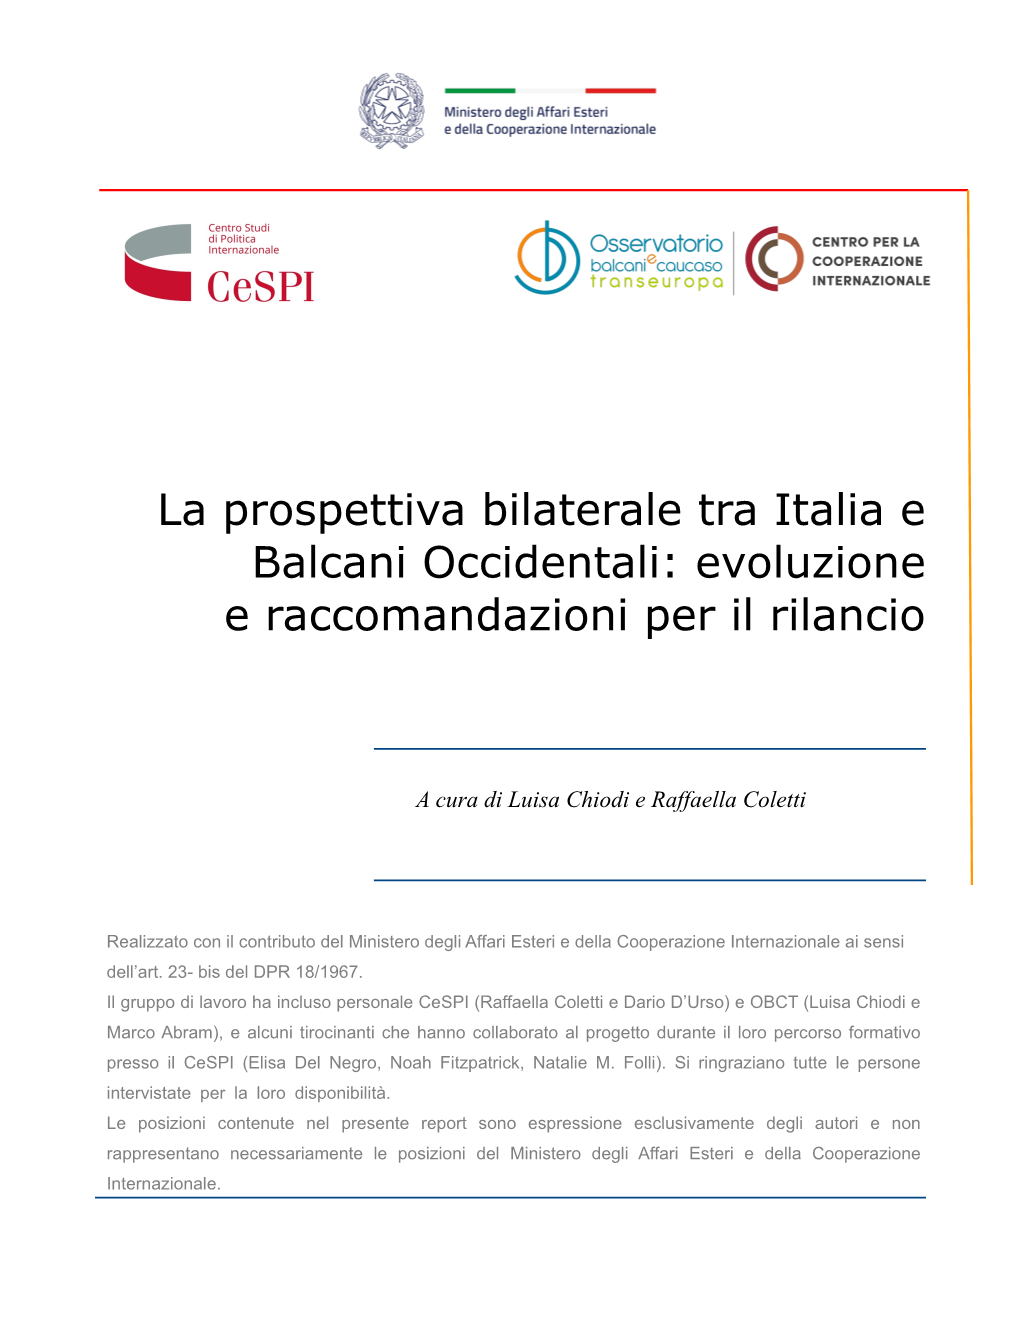 La Prospettiva Bilaterale Tra Italia E Balcani Occidentali: Evoluzione E Raccomandazioni Per Il Rilancio